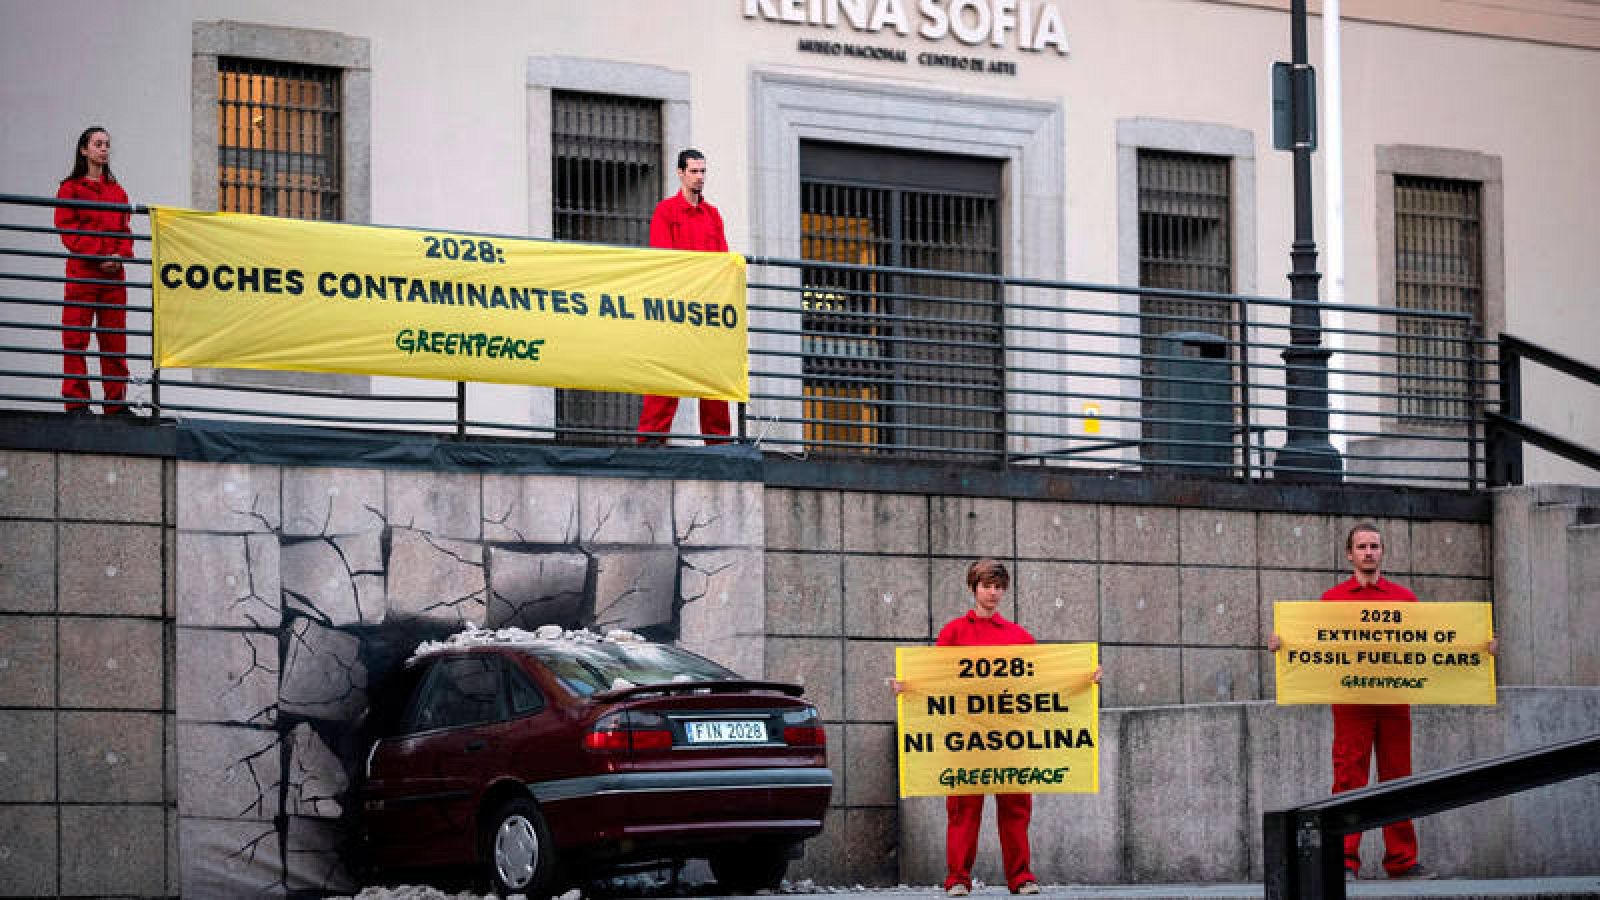 Fotografía facilitada por Greenpeace de activistas de la organización ecologista que han "estrellado" un automóvil contra un muro de la fachada del Museo Nacional Centro de Arte Reina Sofía.